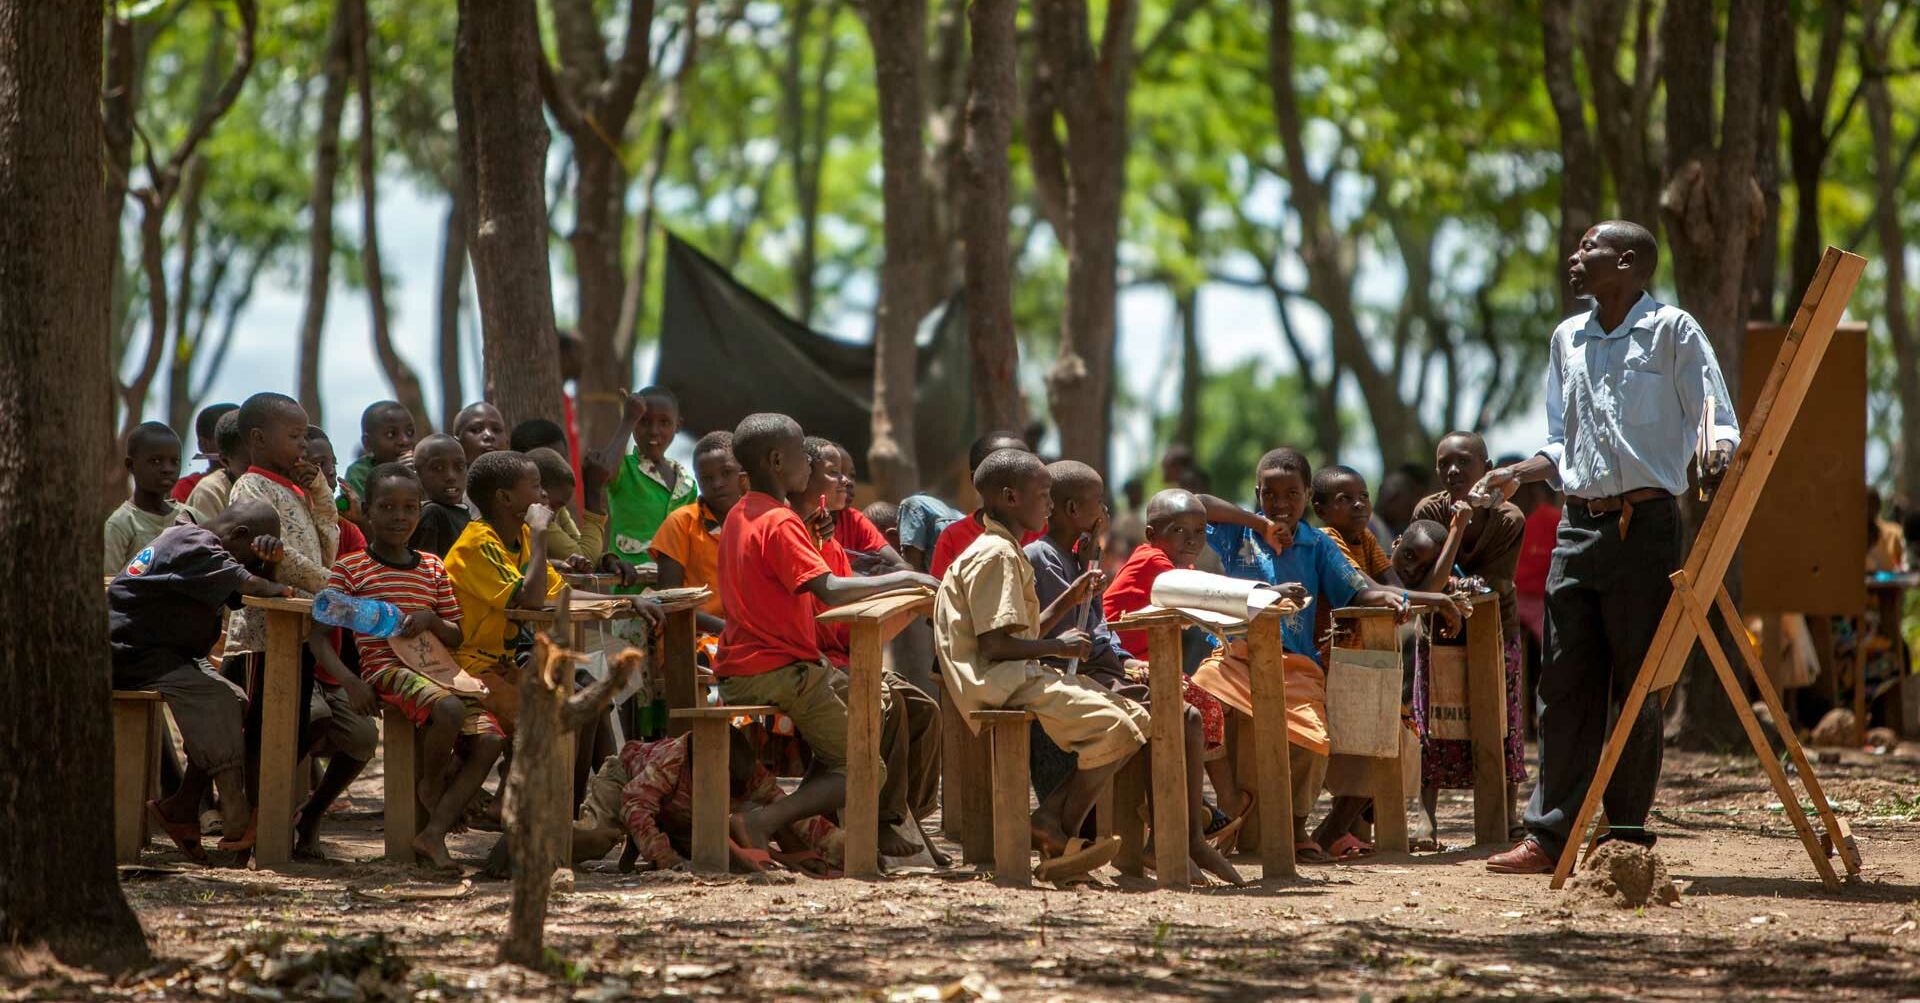 Schule im Freien unter Bäumen, Kinder, Schüler und Lehrer  KeniaBildung_1920x1080.jpg